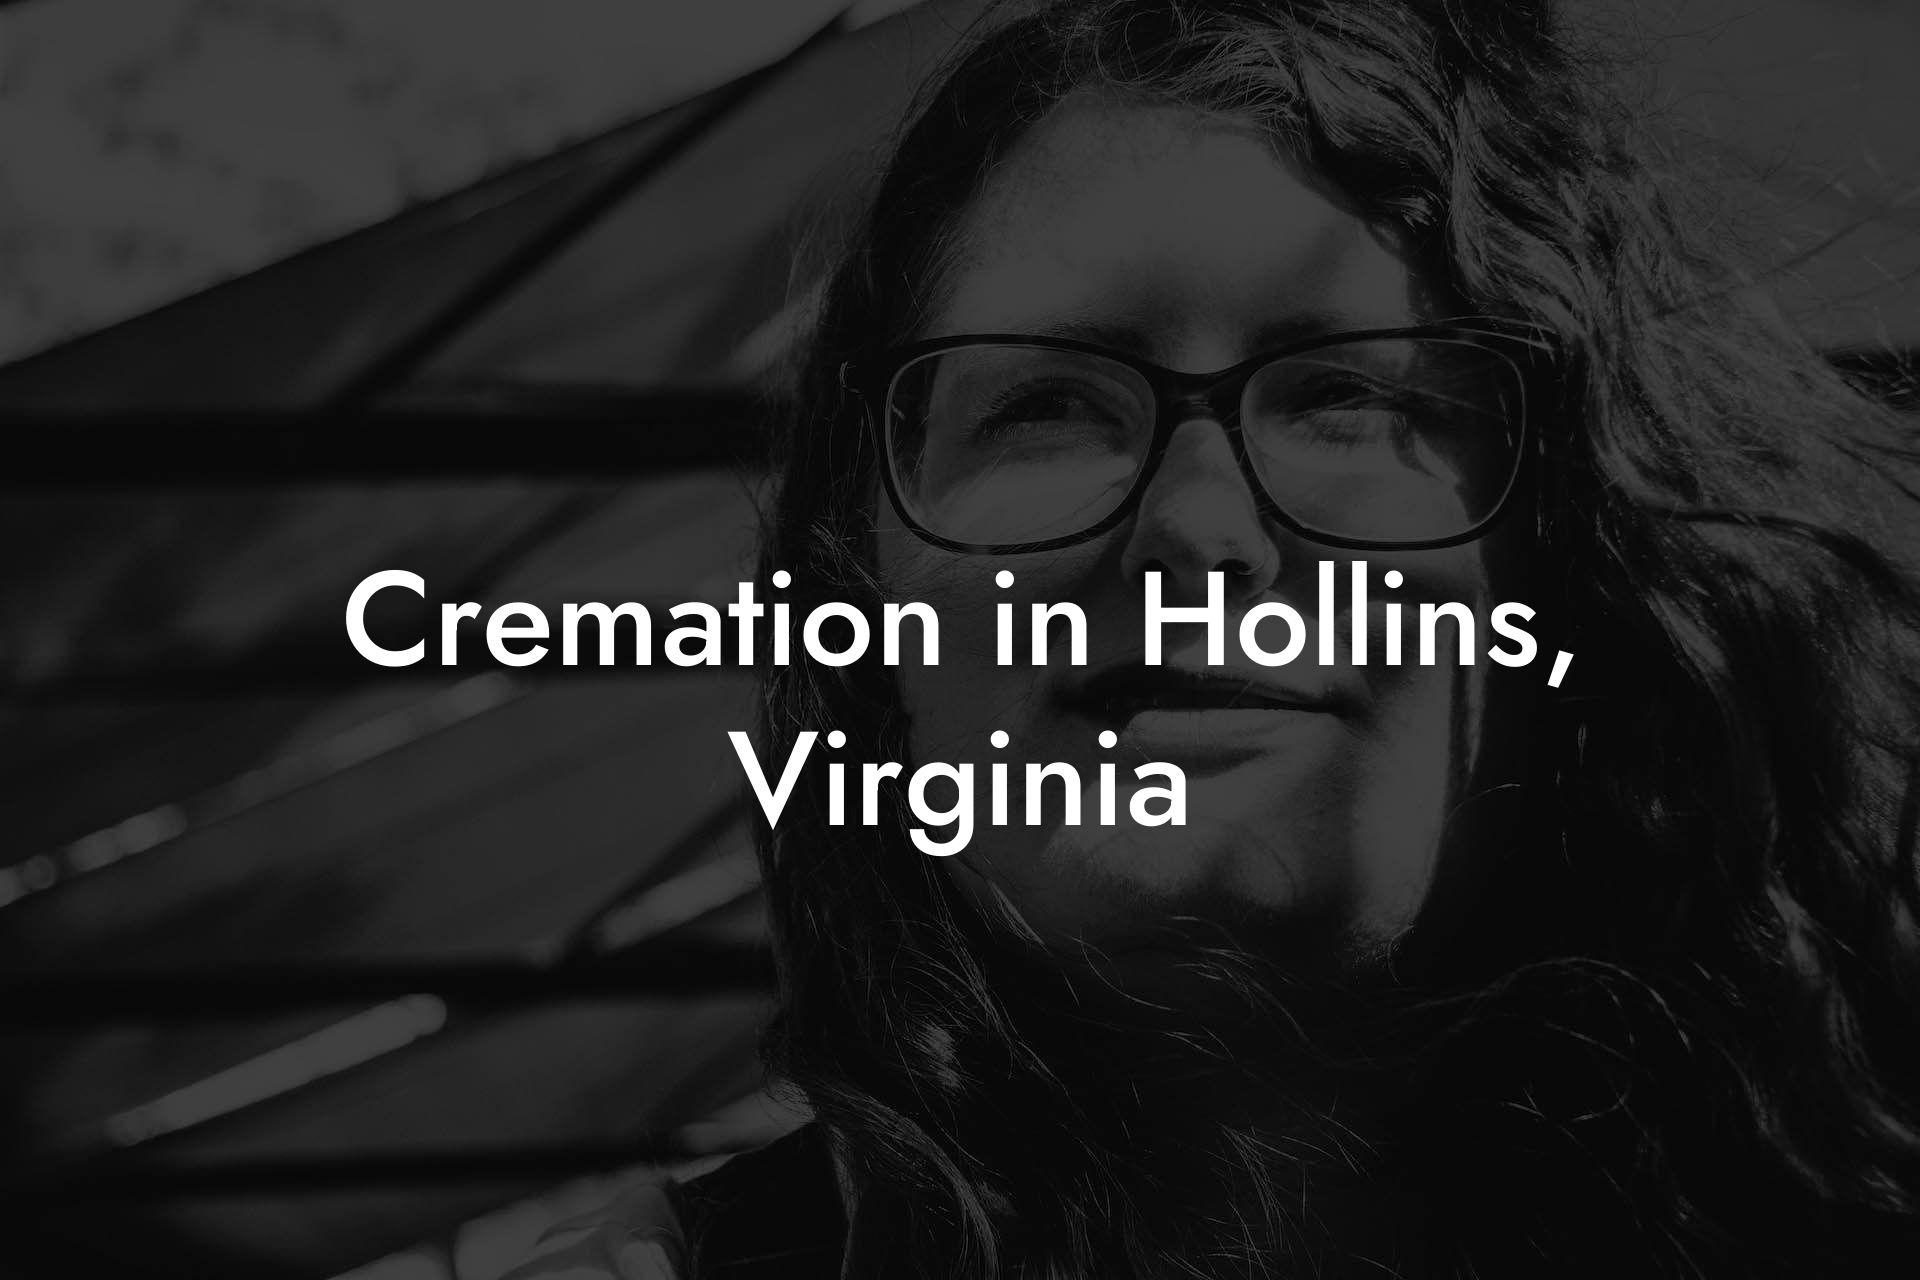 Cremation in Hollins, Virginia